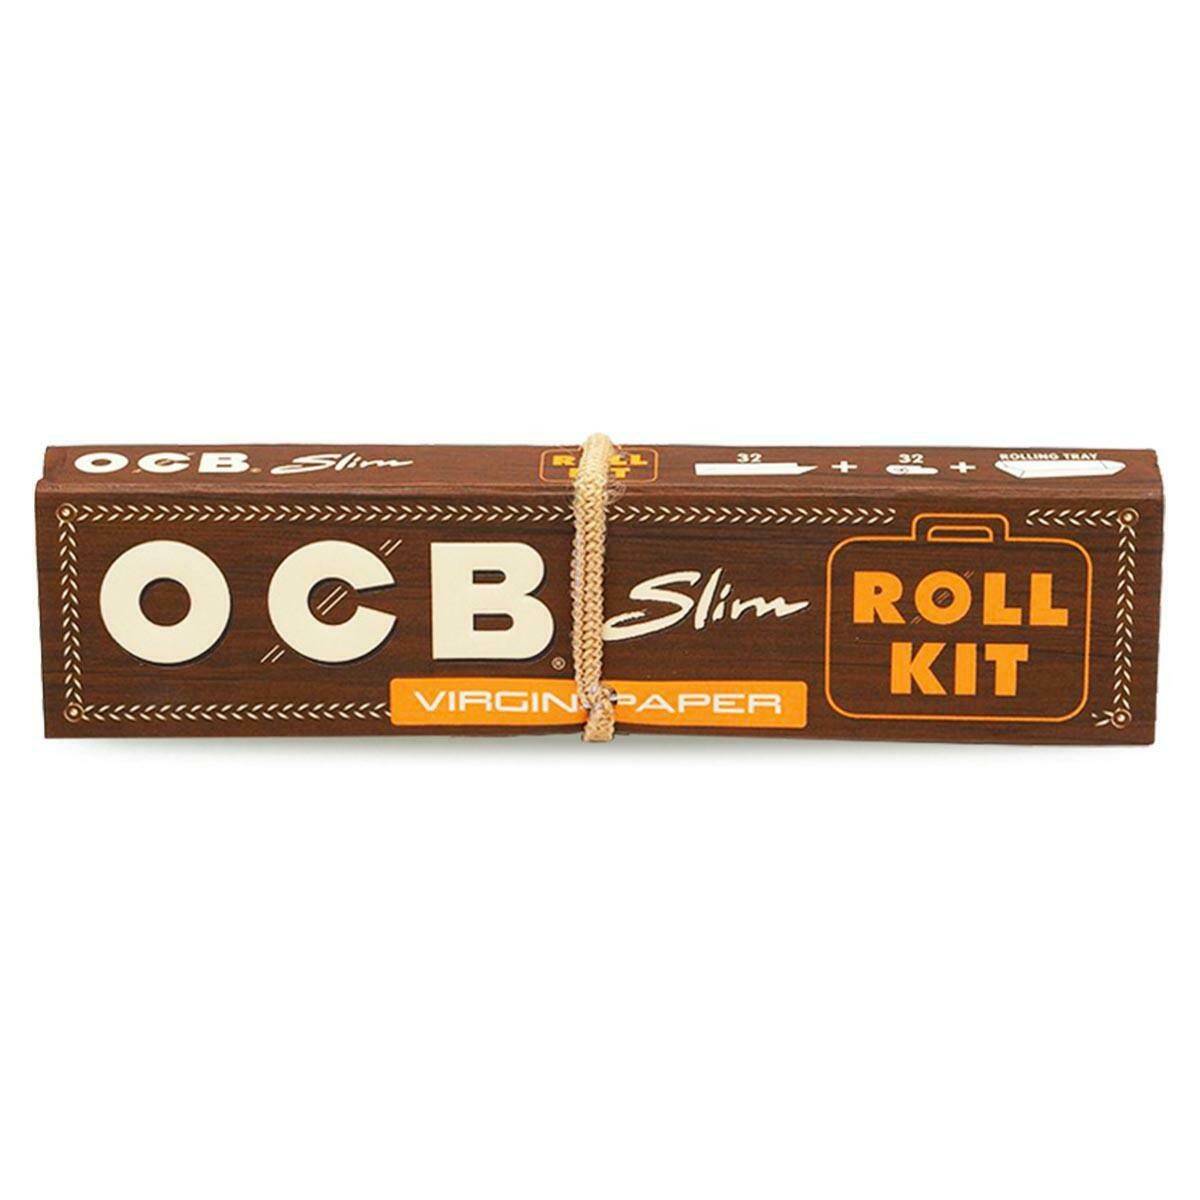 OCB Virgin Slim Roll Kit + Filters (Photo 1)